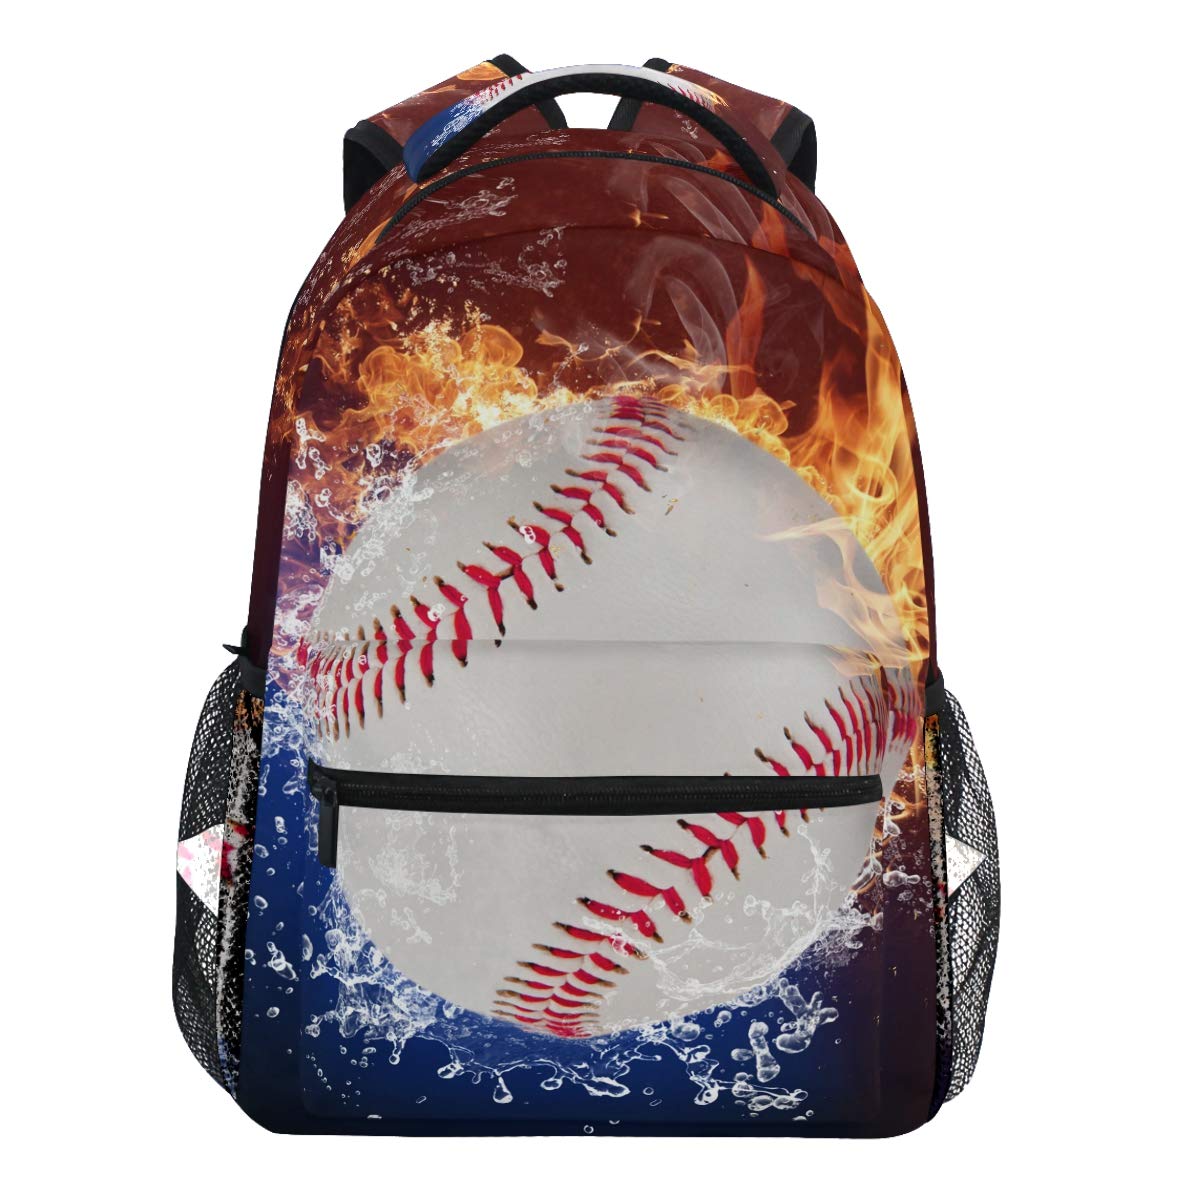 Oarencol Baseball-Rucksack für Damen, Herren, Mädchen, Jungen und Baseball, mit Feuerspritzern, Wassersport, Softball-Rucksack